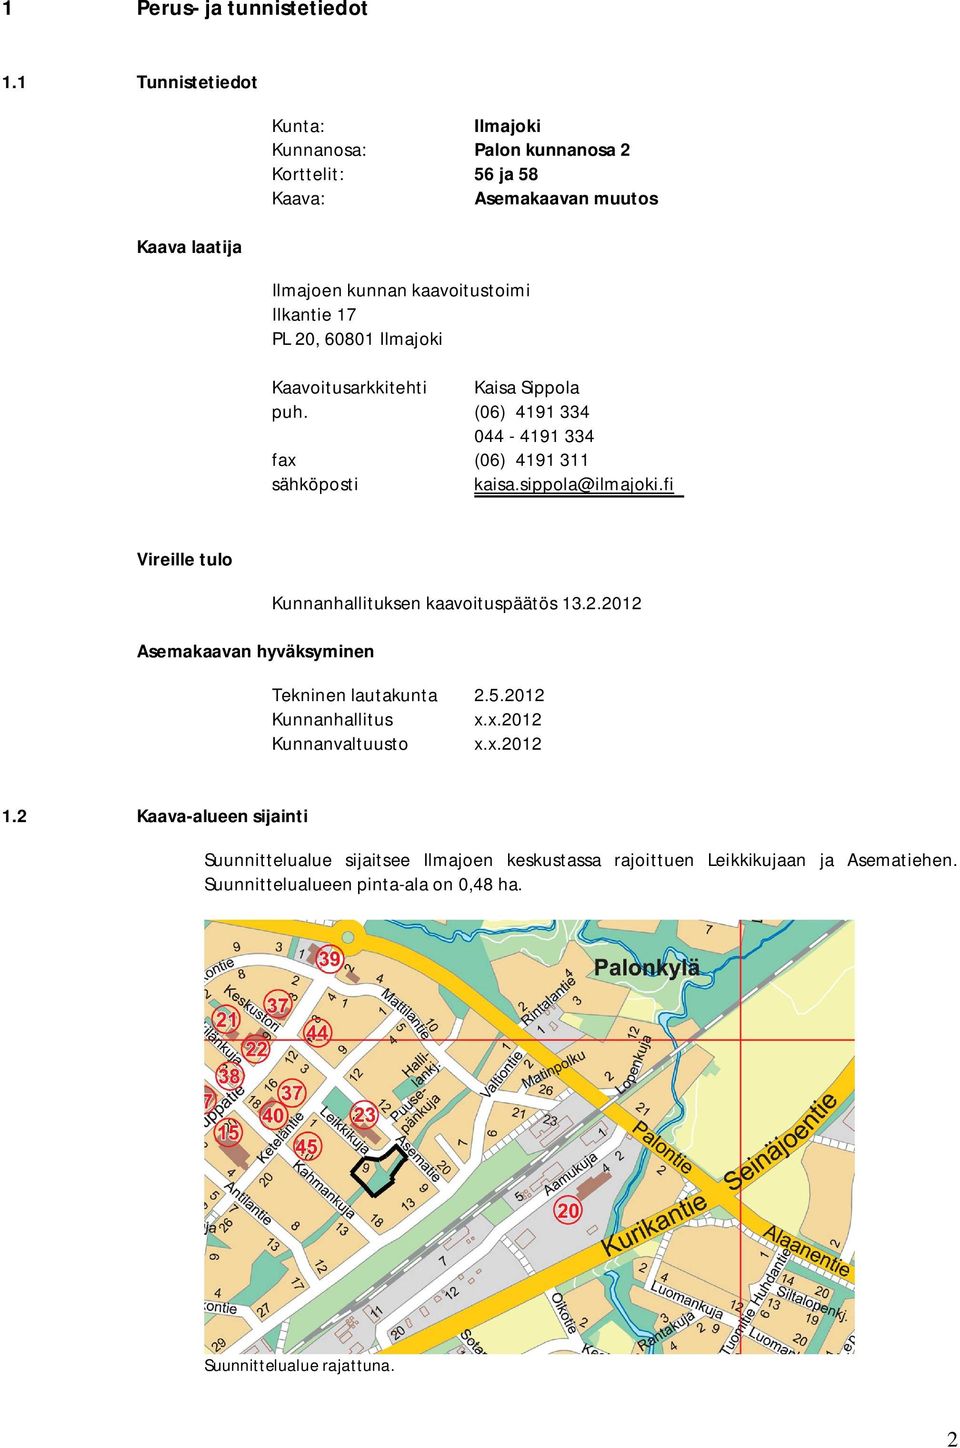 20, 60801 Ilmajoki Kaavoitusarkkitehti Kaisa Sippola puh. (06) 4191 334 044-4191 334 fax (06) 4191 311 sähköposti kaisa.sippola@ilmajoki.